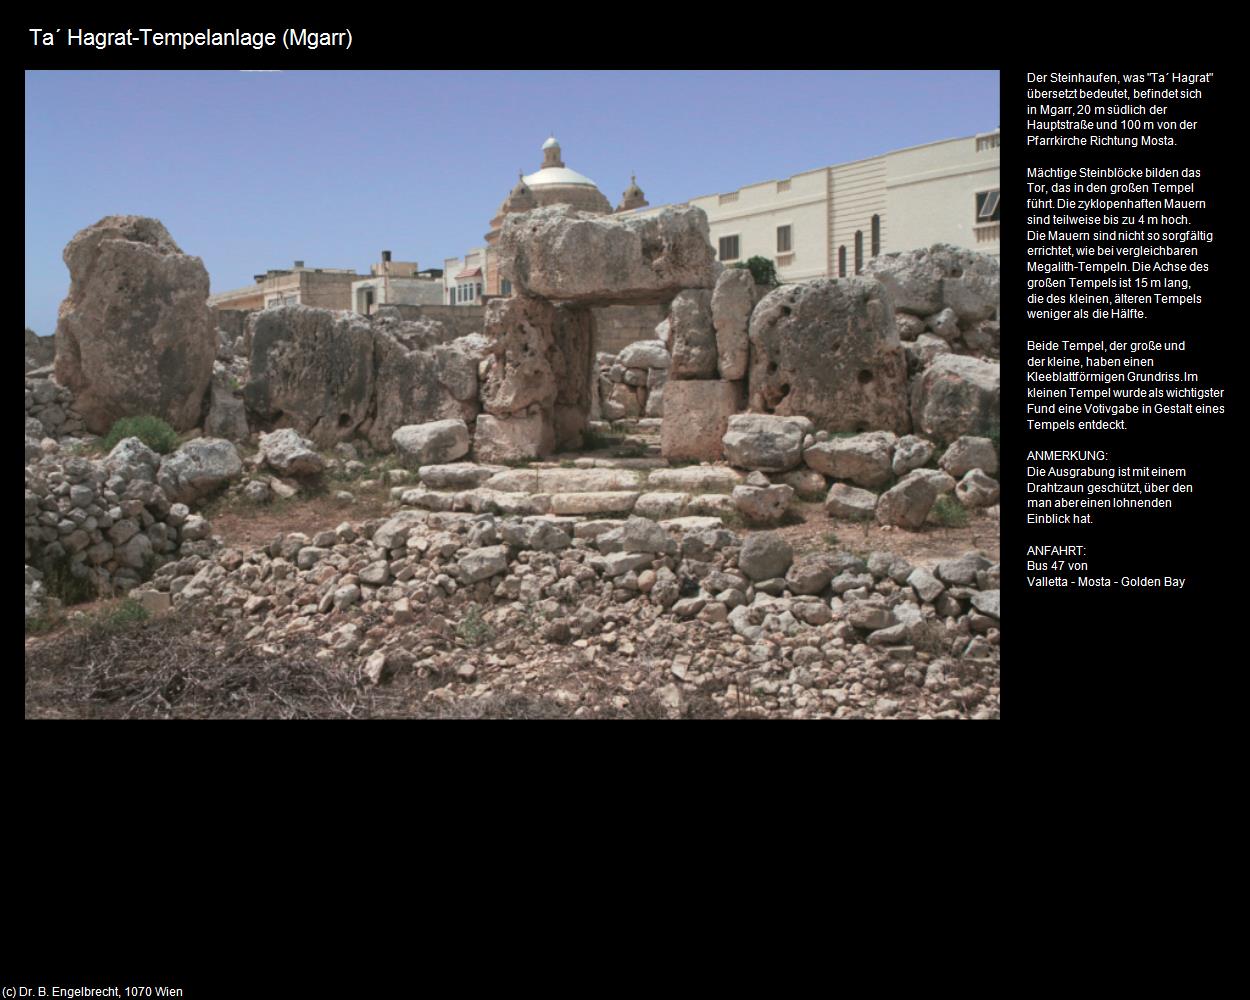 Tempelanlage Ta' Hagrat (Mgarr auf Malta) in Malta - Perle im Mittelmeer